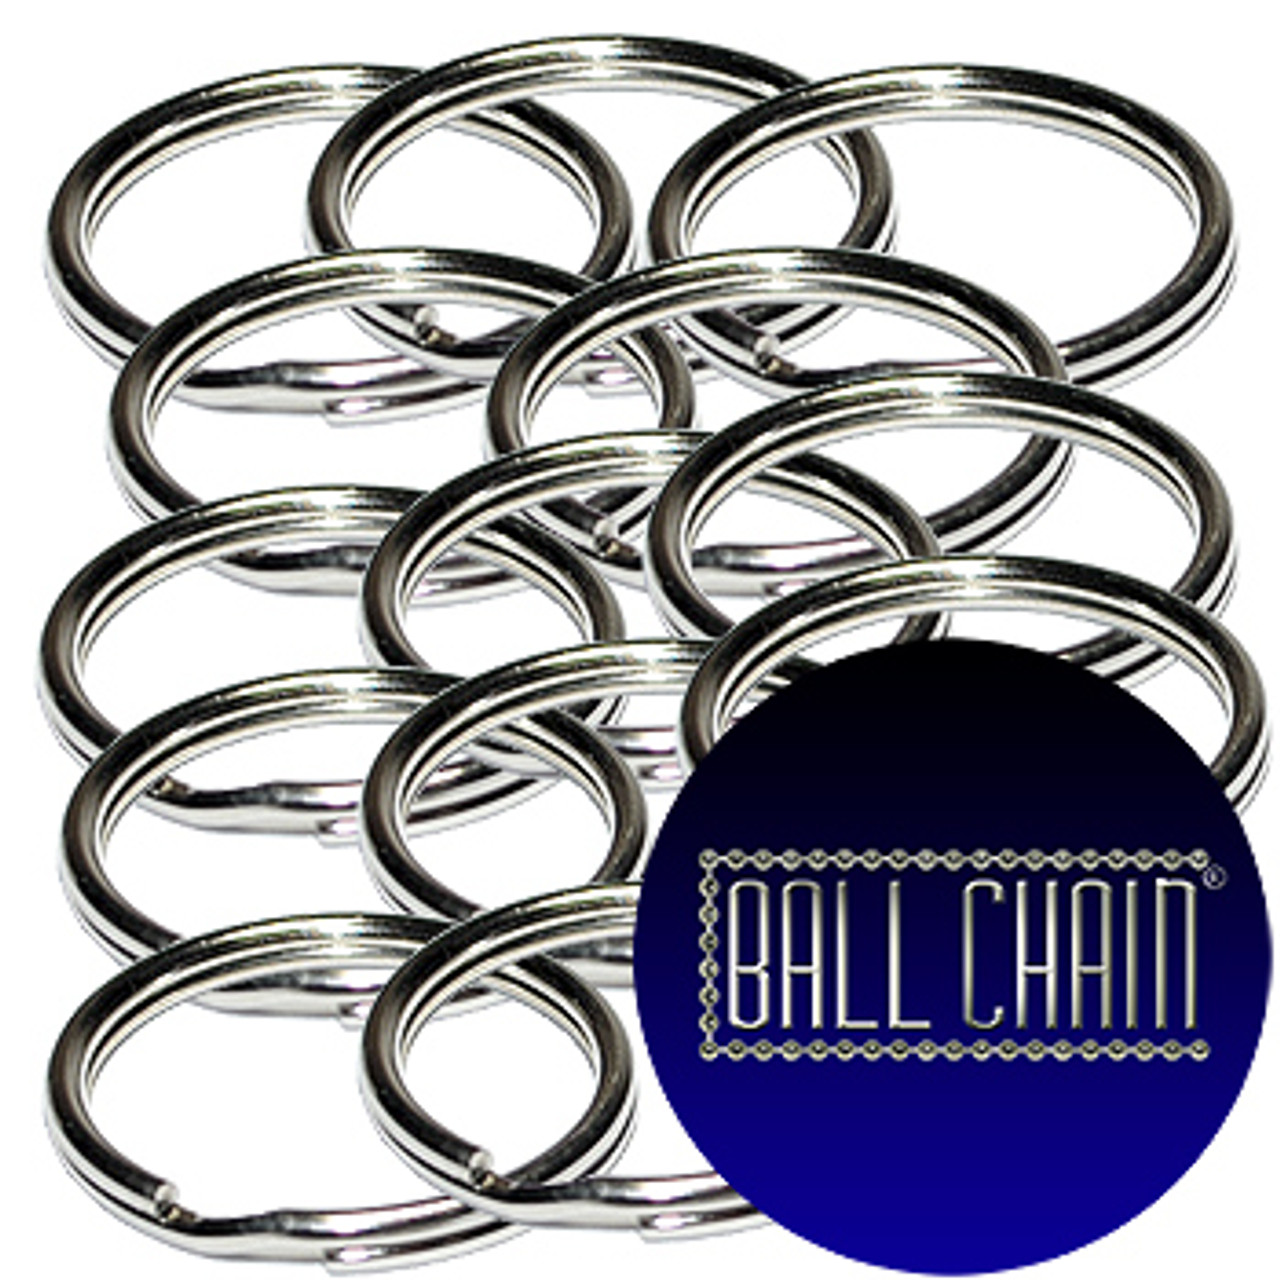 28mm Nickel Plated Steel Split Key Rings sold in bulk at low wholesale prices.